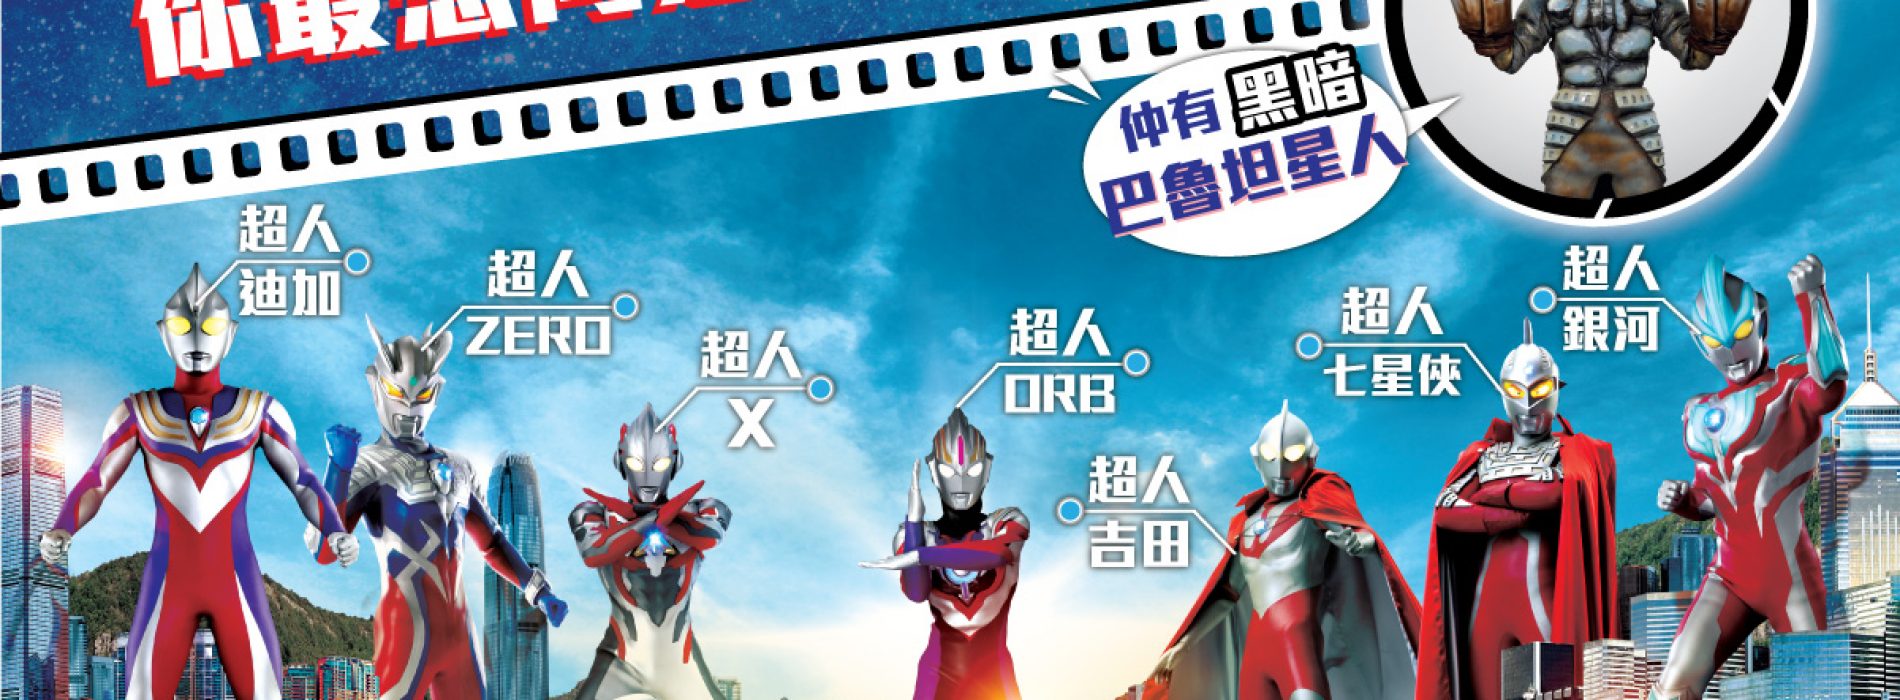 科學園 Ultraman超人嘉年華